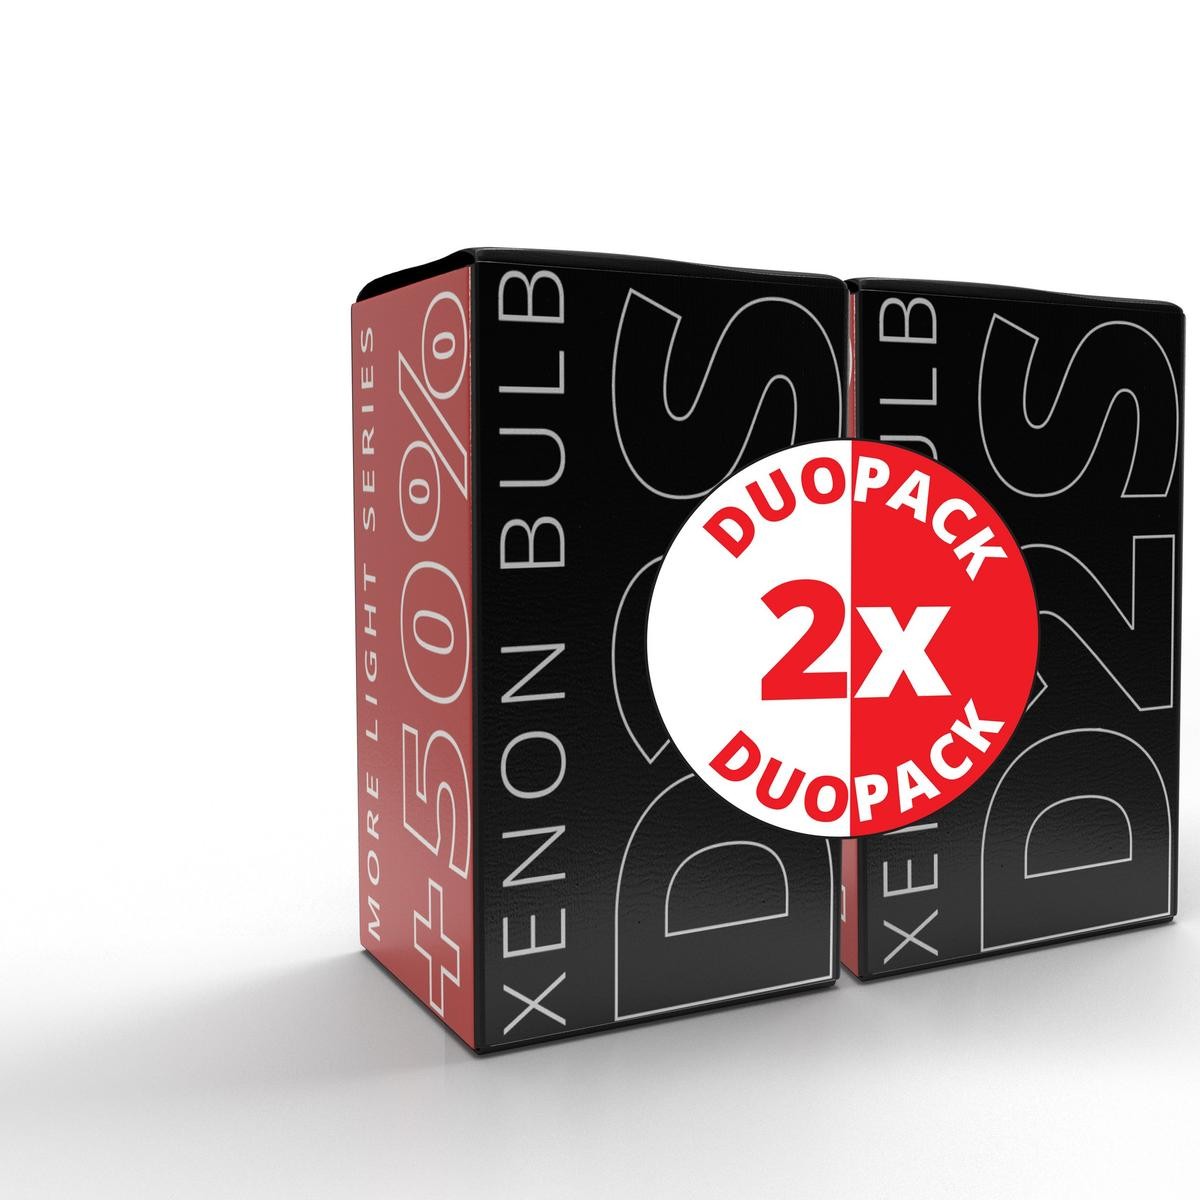 EINPARTS DuoPack D2R Xenon DUOEPD2S50+50% Bulb, spotlight 5350642349